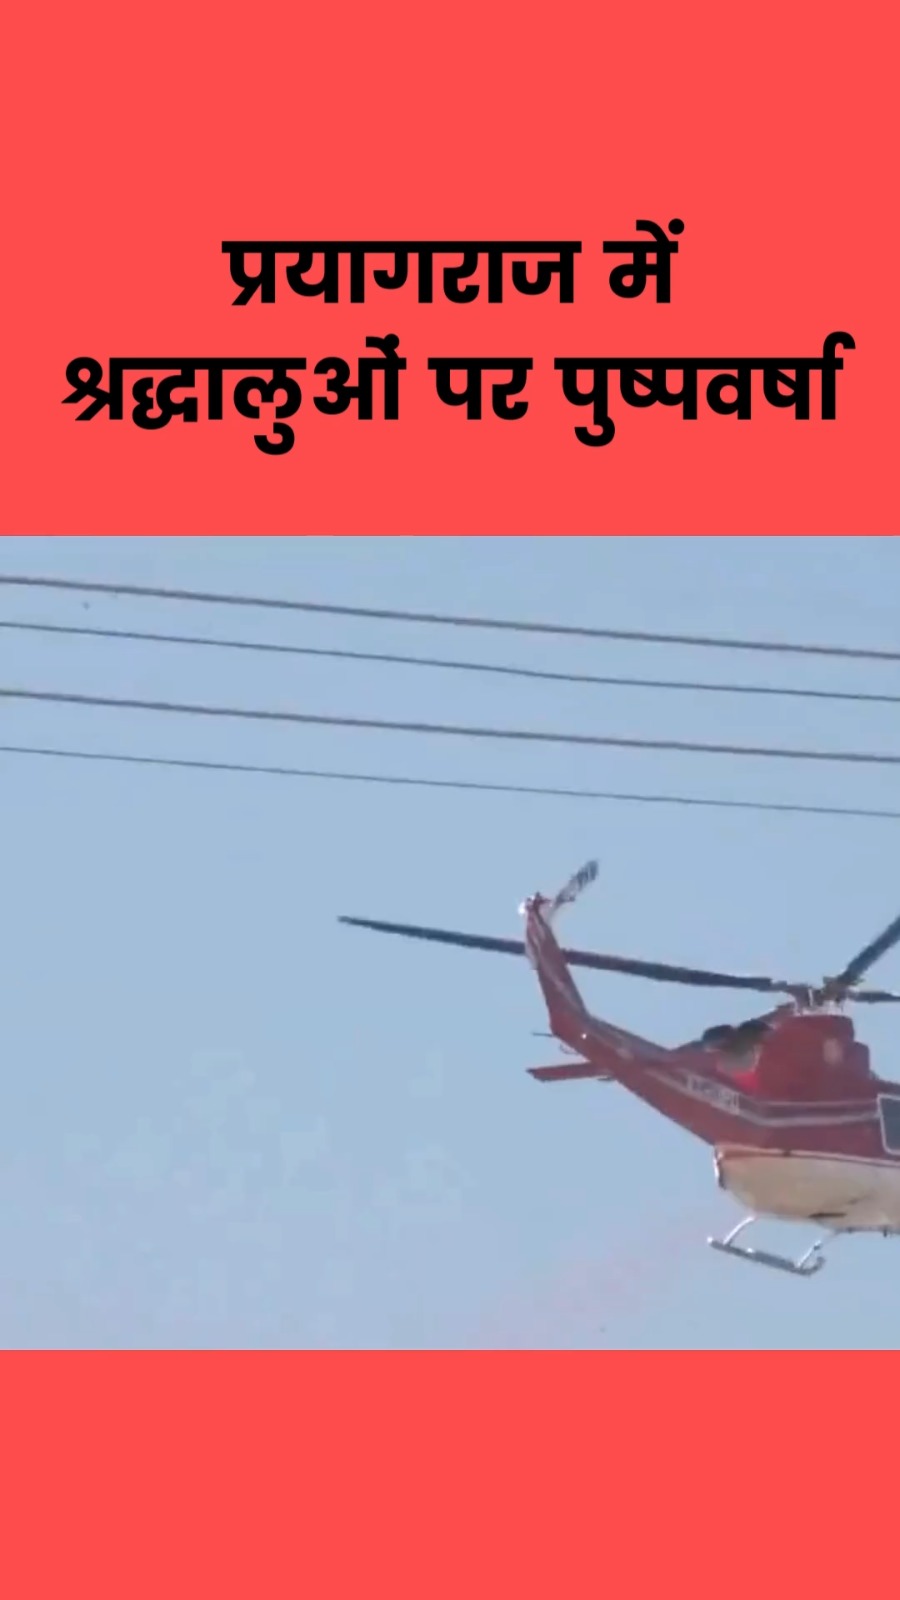 प्रयागराज स्थित संगम तट पर मौनी अमावस्या पर श्रद्धालुओं पर हेलीकॉप्टर से पुष्पवर्षा की गई देखिए वीडियो…